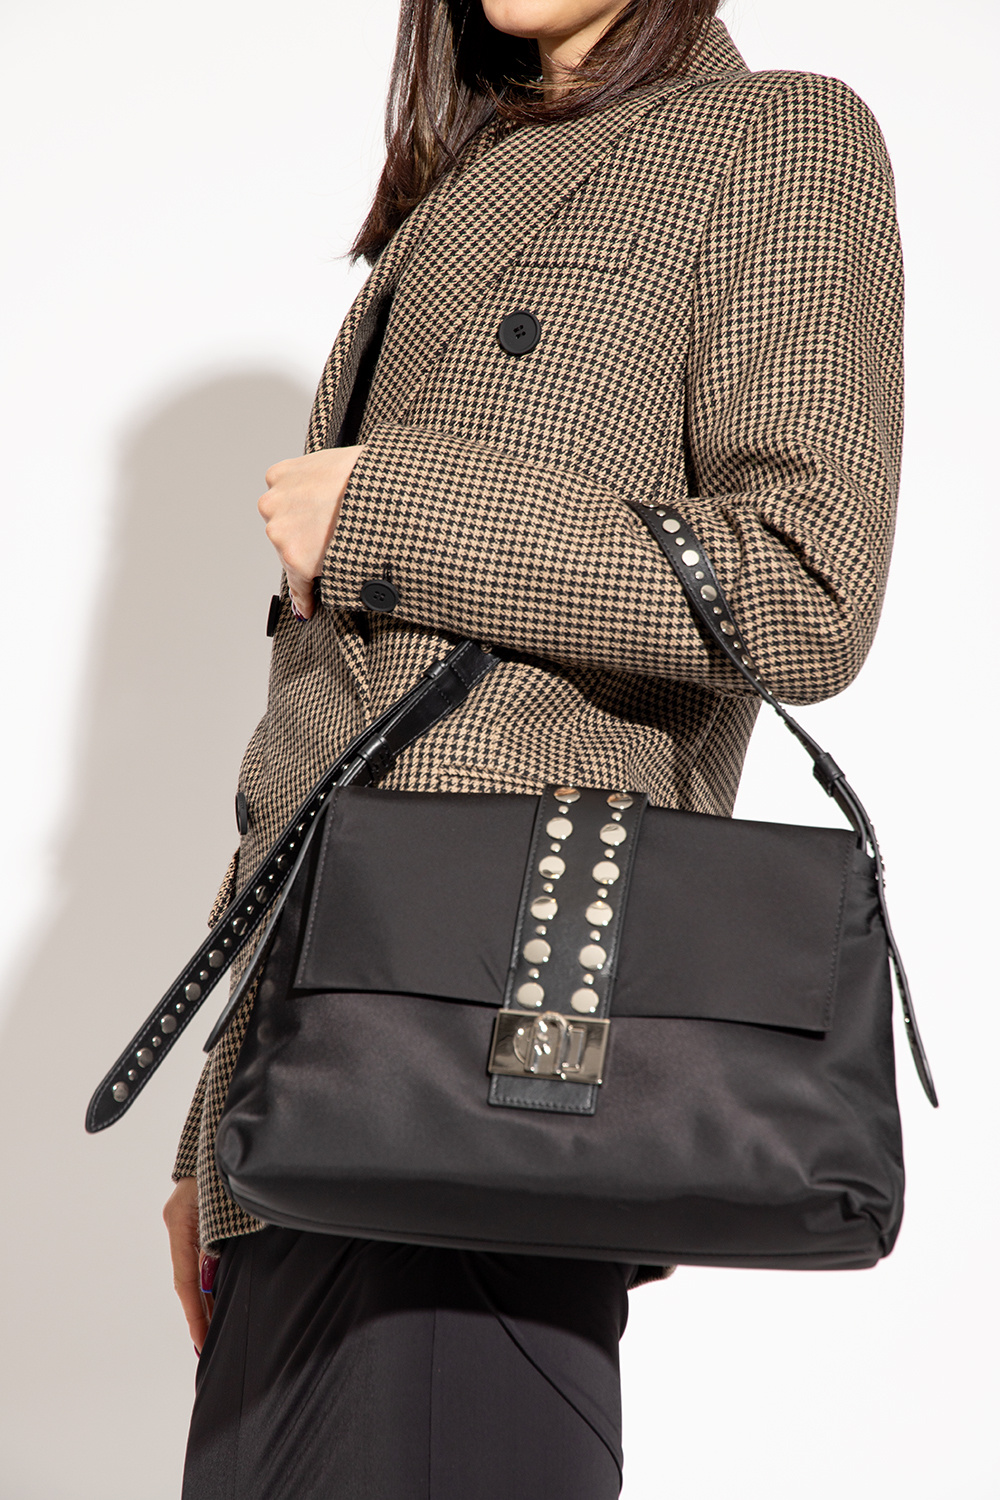 Furla ‘Charlotte Medium’ shoulder model bag